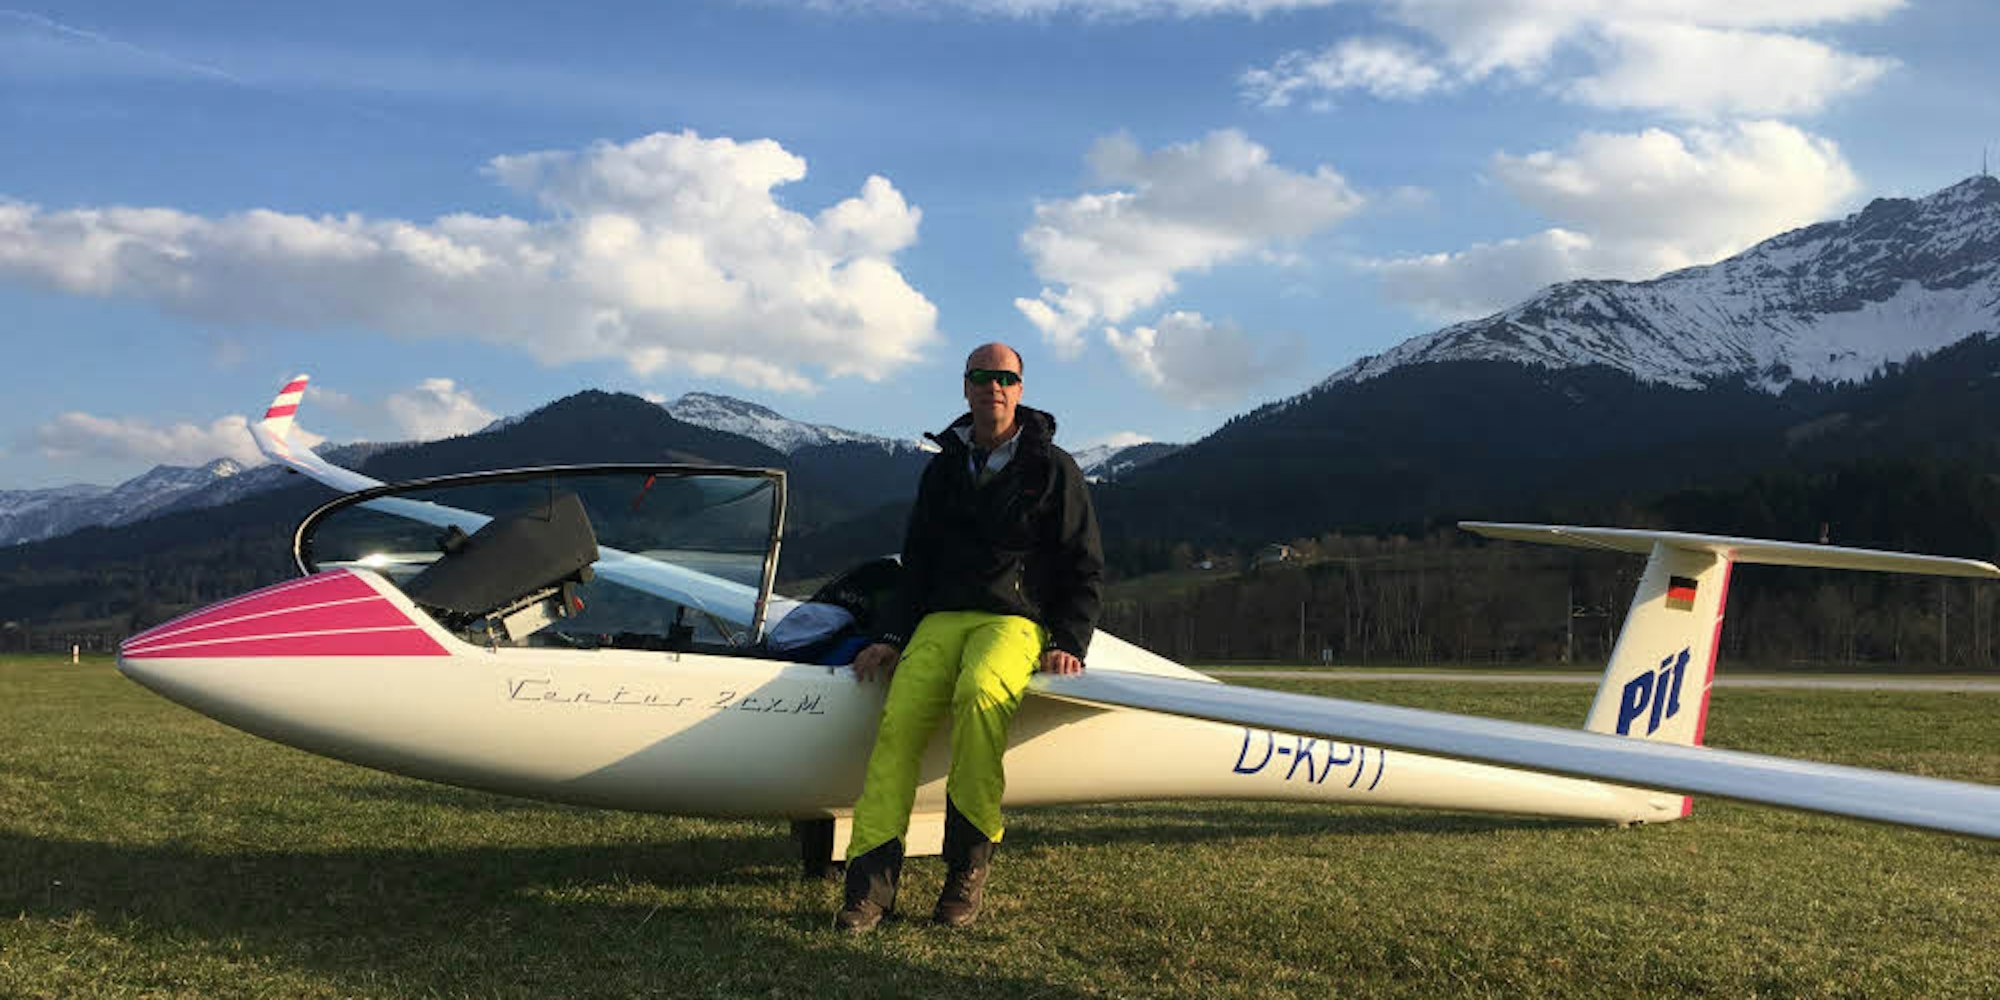 Mit seinem Segelflugzeug „Ventus 2cxM“ flog Peter Flosbach vom Flugplatz an der Neye aus bei seinem Wettbewerbsflug in 10,5 Stunden mehr als 1000 Kilometer. Er erreichte dabei eine Höhe von 2550 Metern.